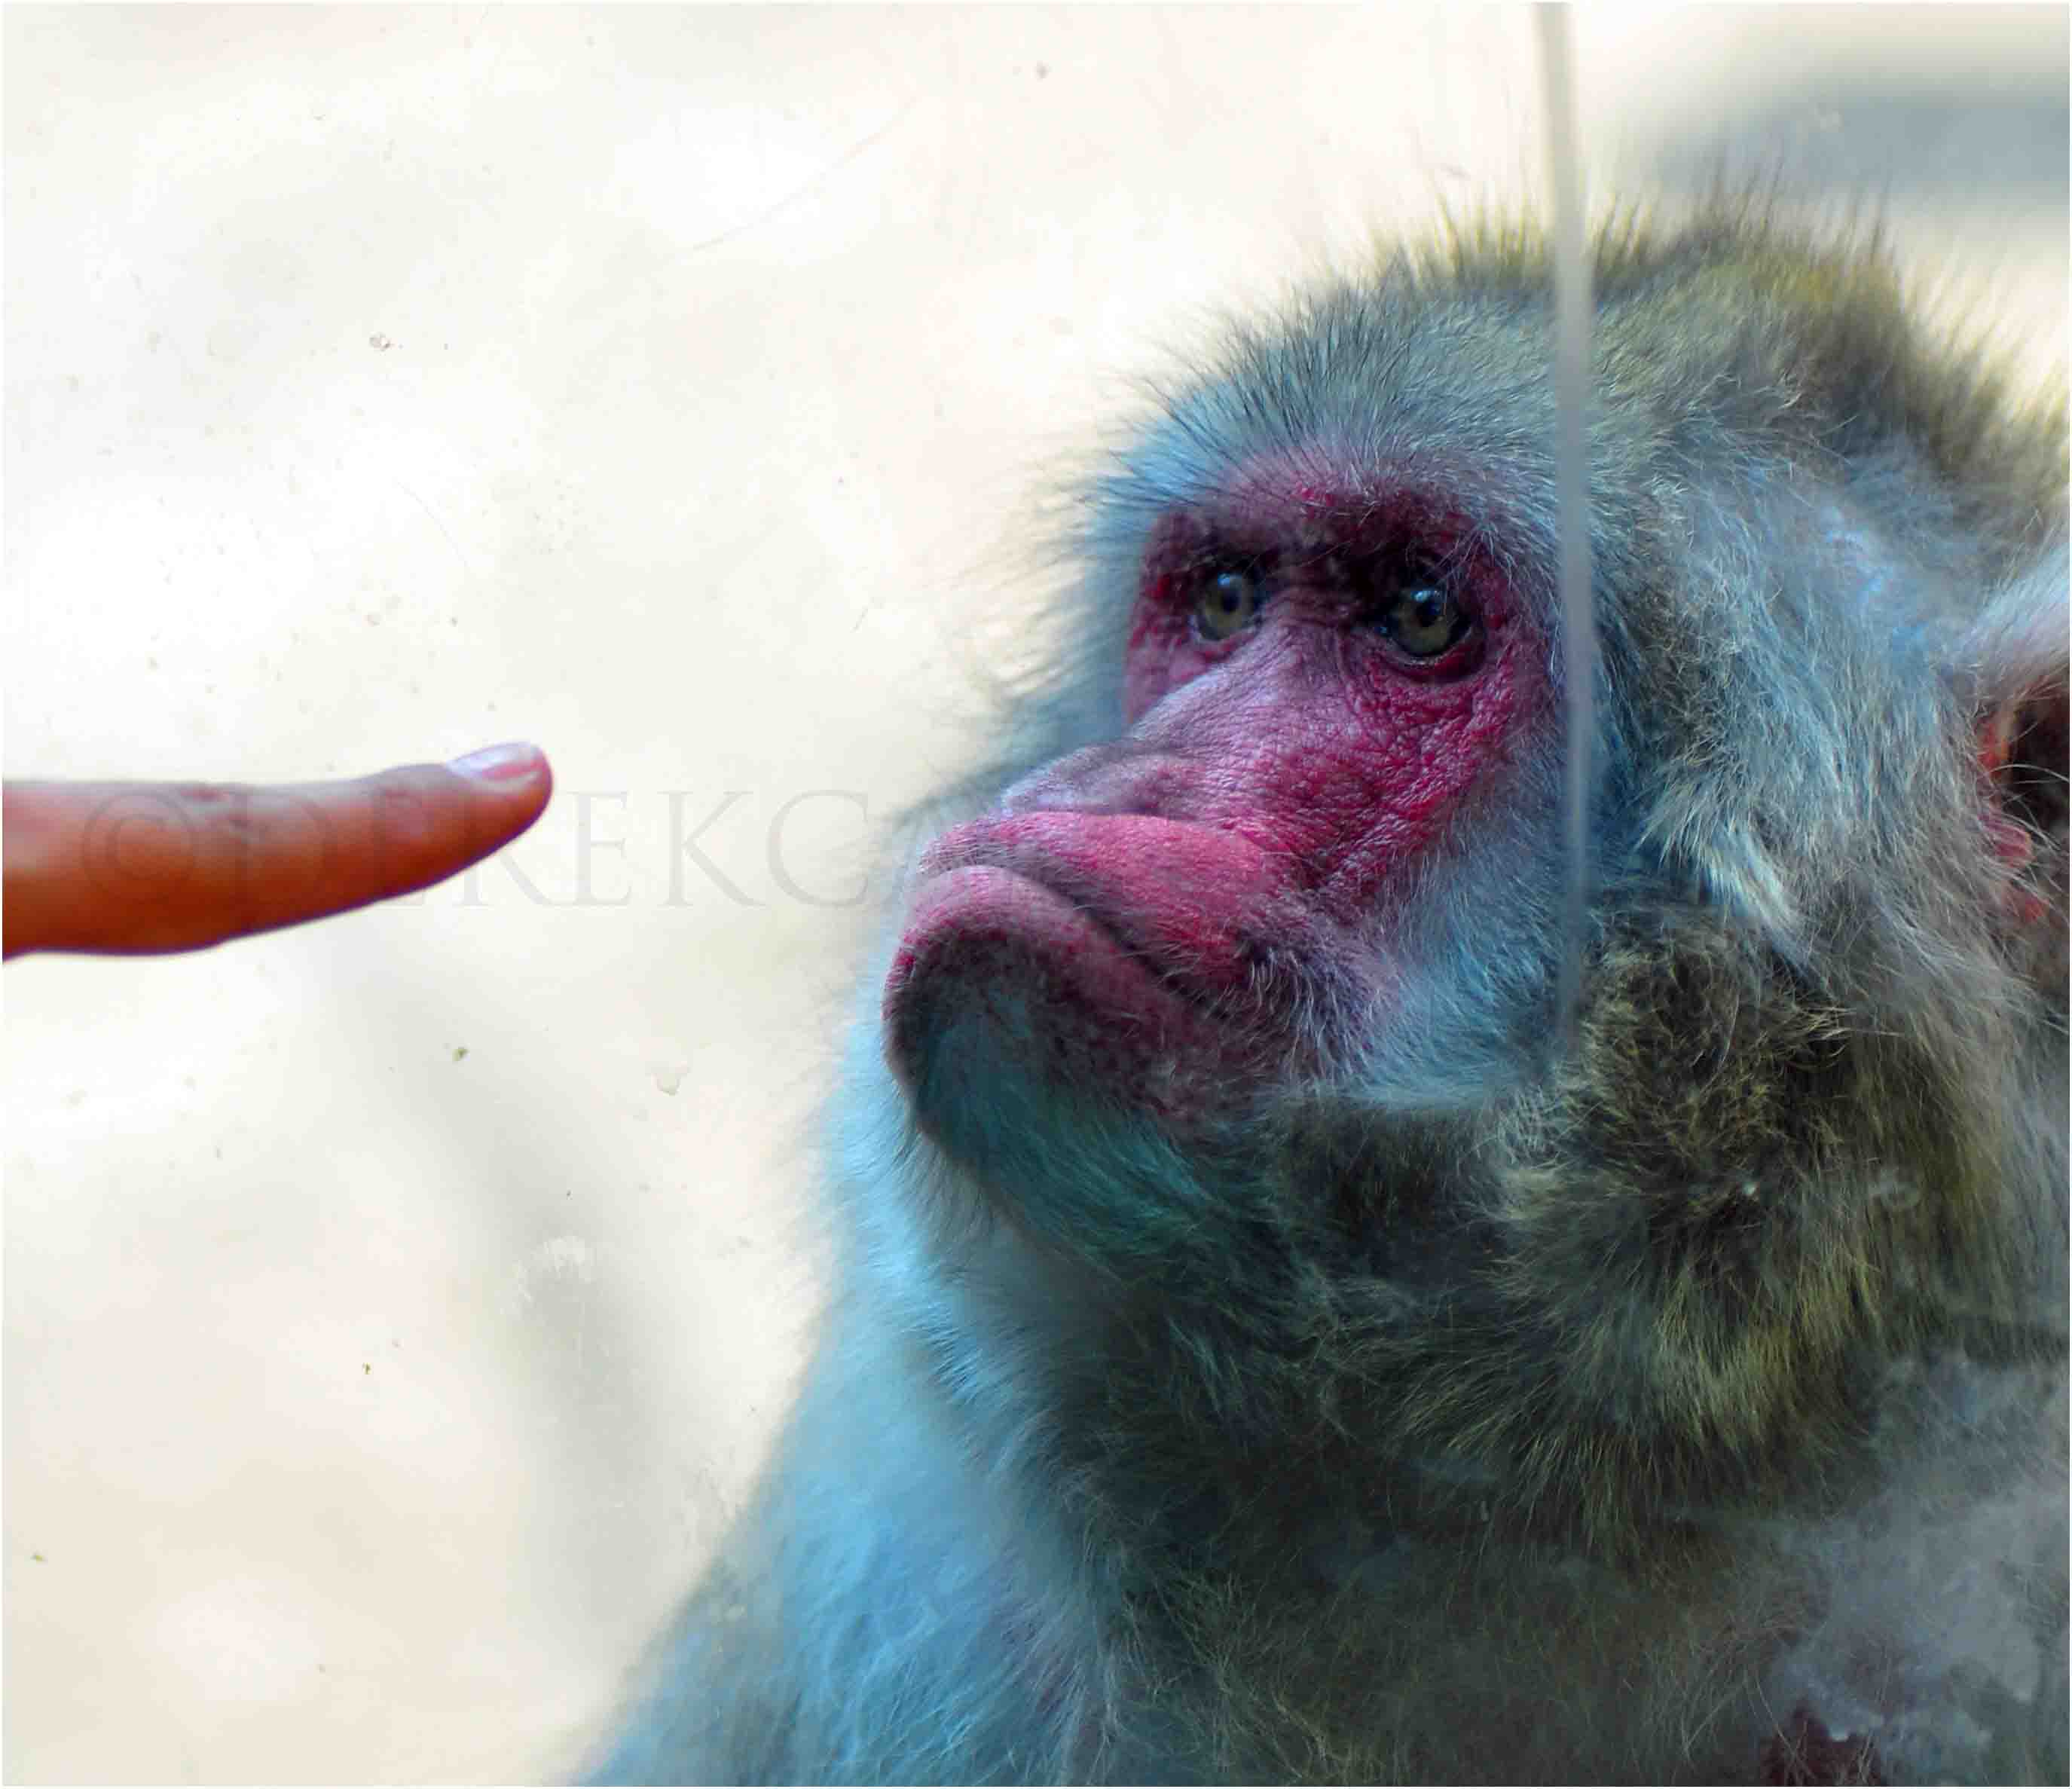 Monkey examines someones finger